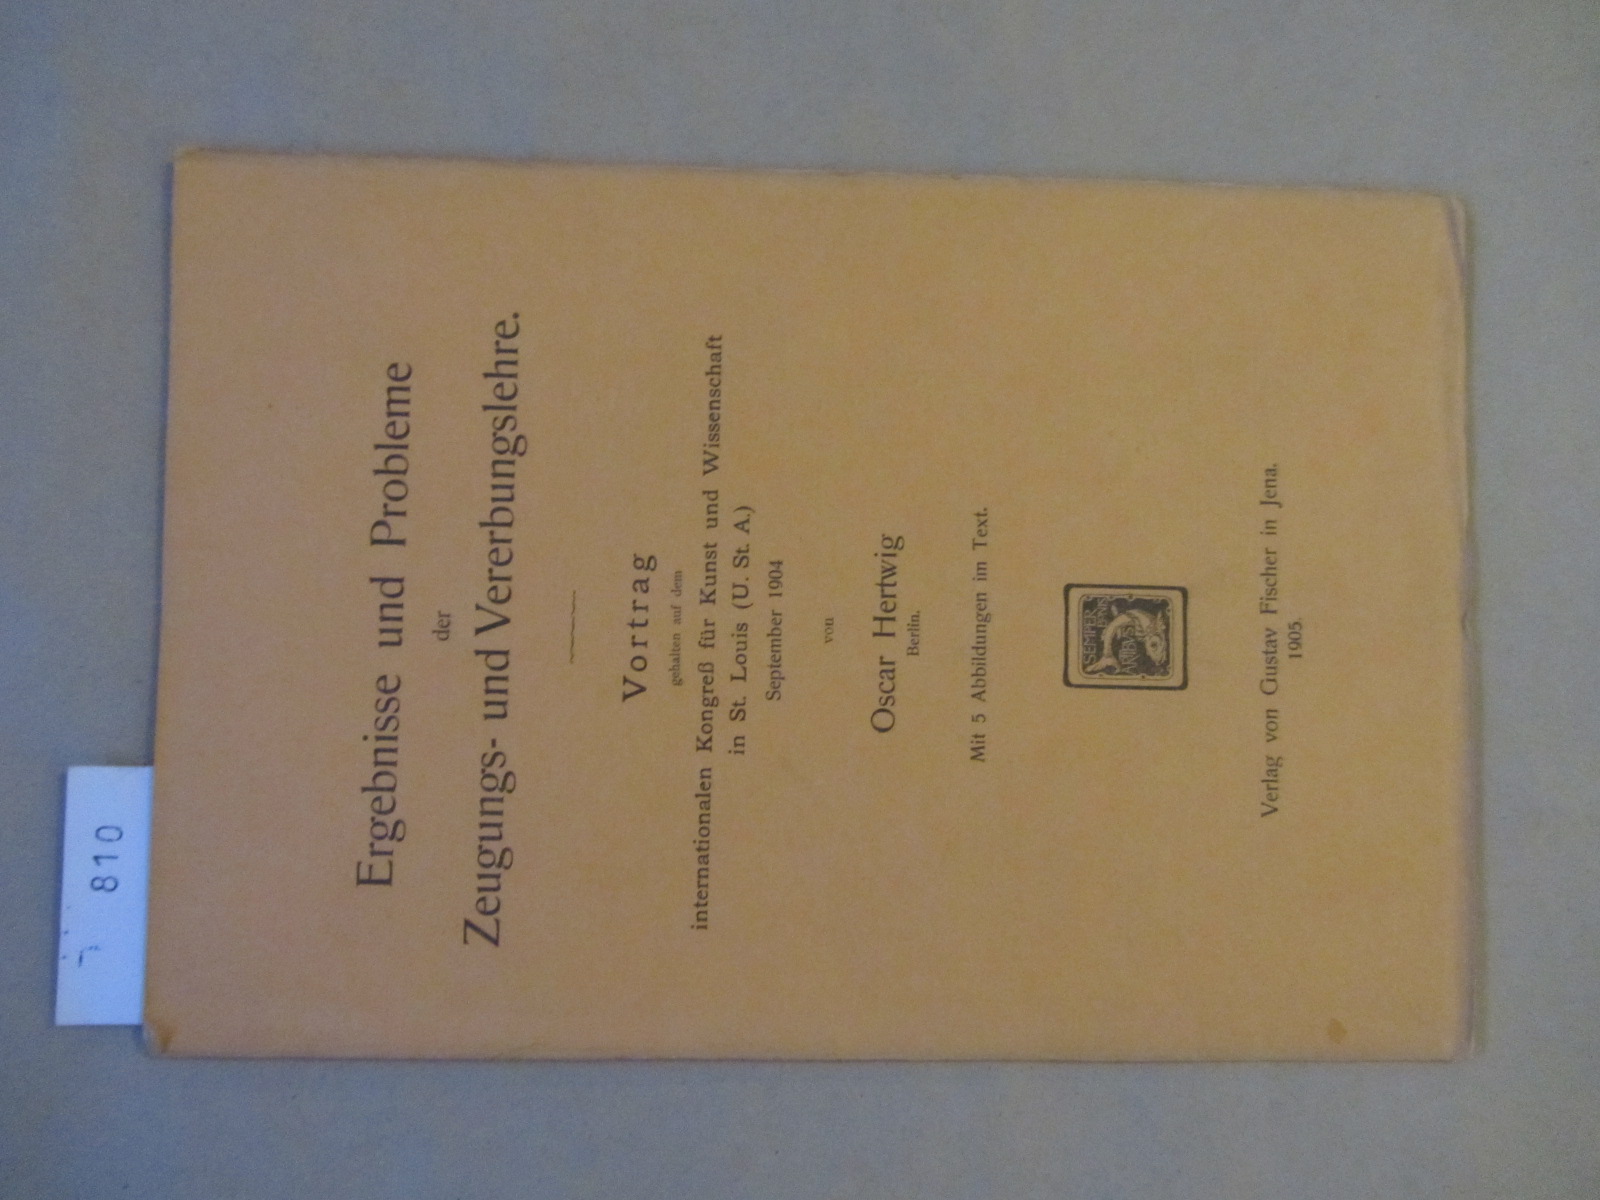 Hertwig, Oscar:  Ergebnisse und Probleme der Zeugungs- und Vererbungslehre. Vortrag gehalten auf dem internationalen Kongreß für Kunst und Wissenschaft in St. Louis September 1904. 